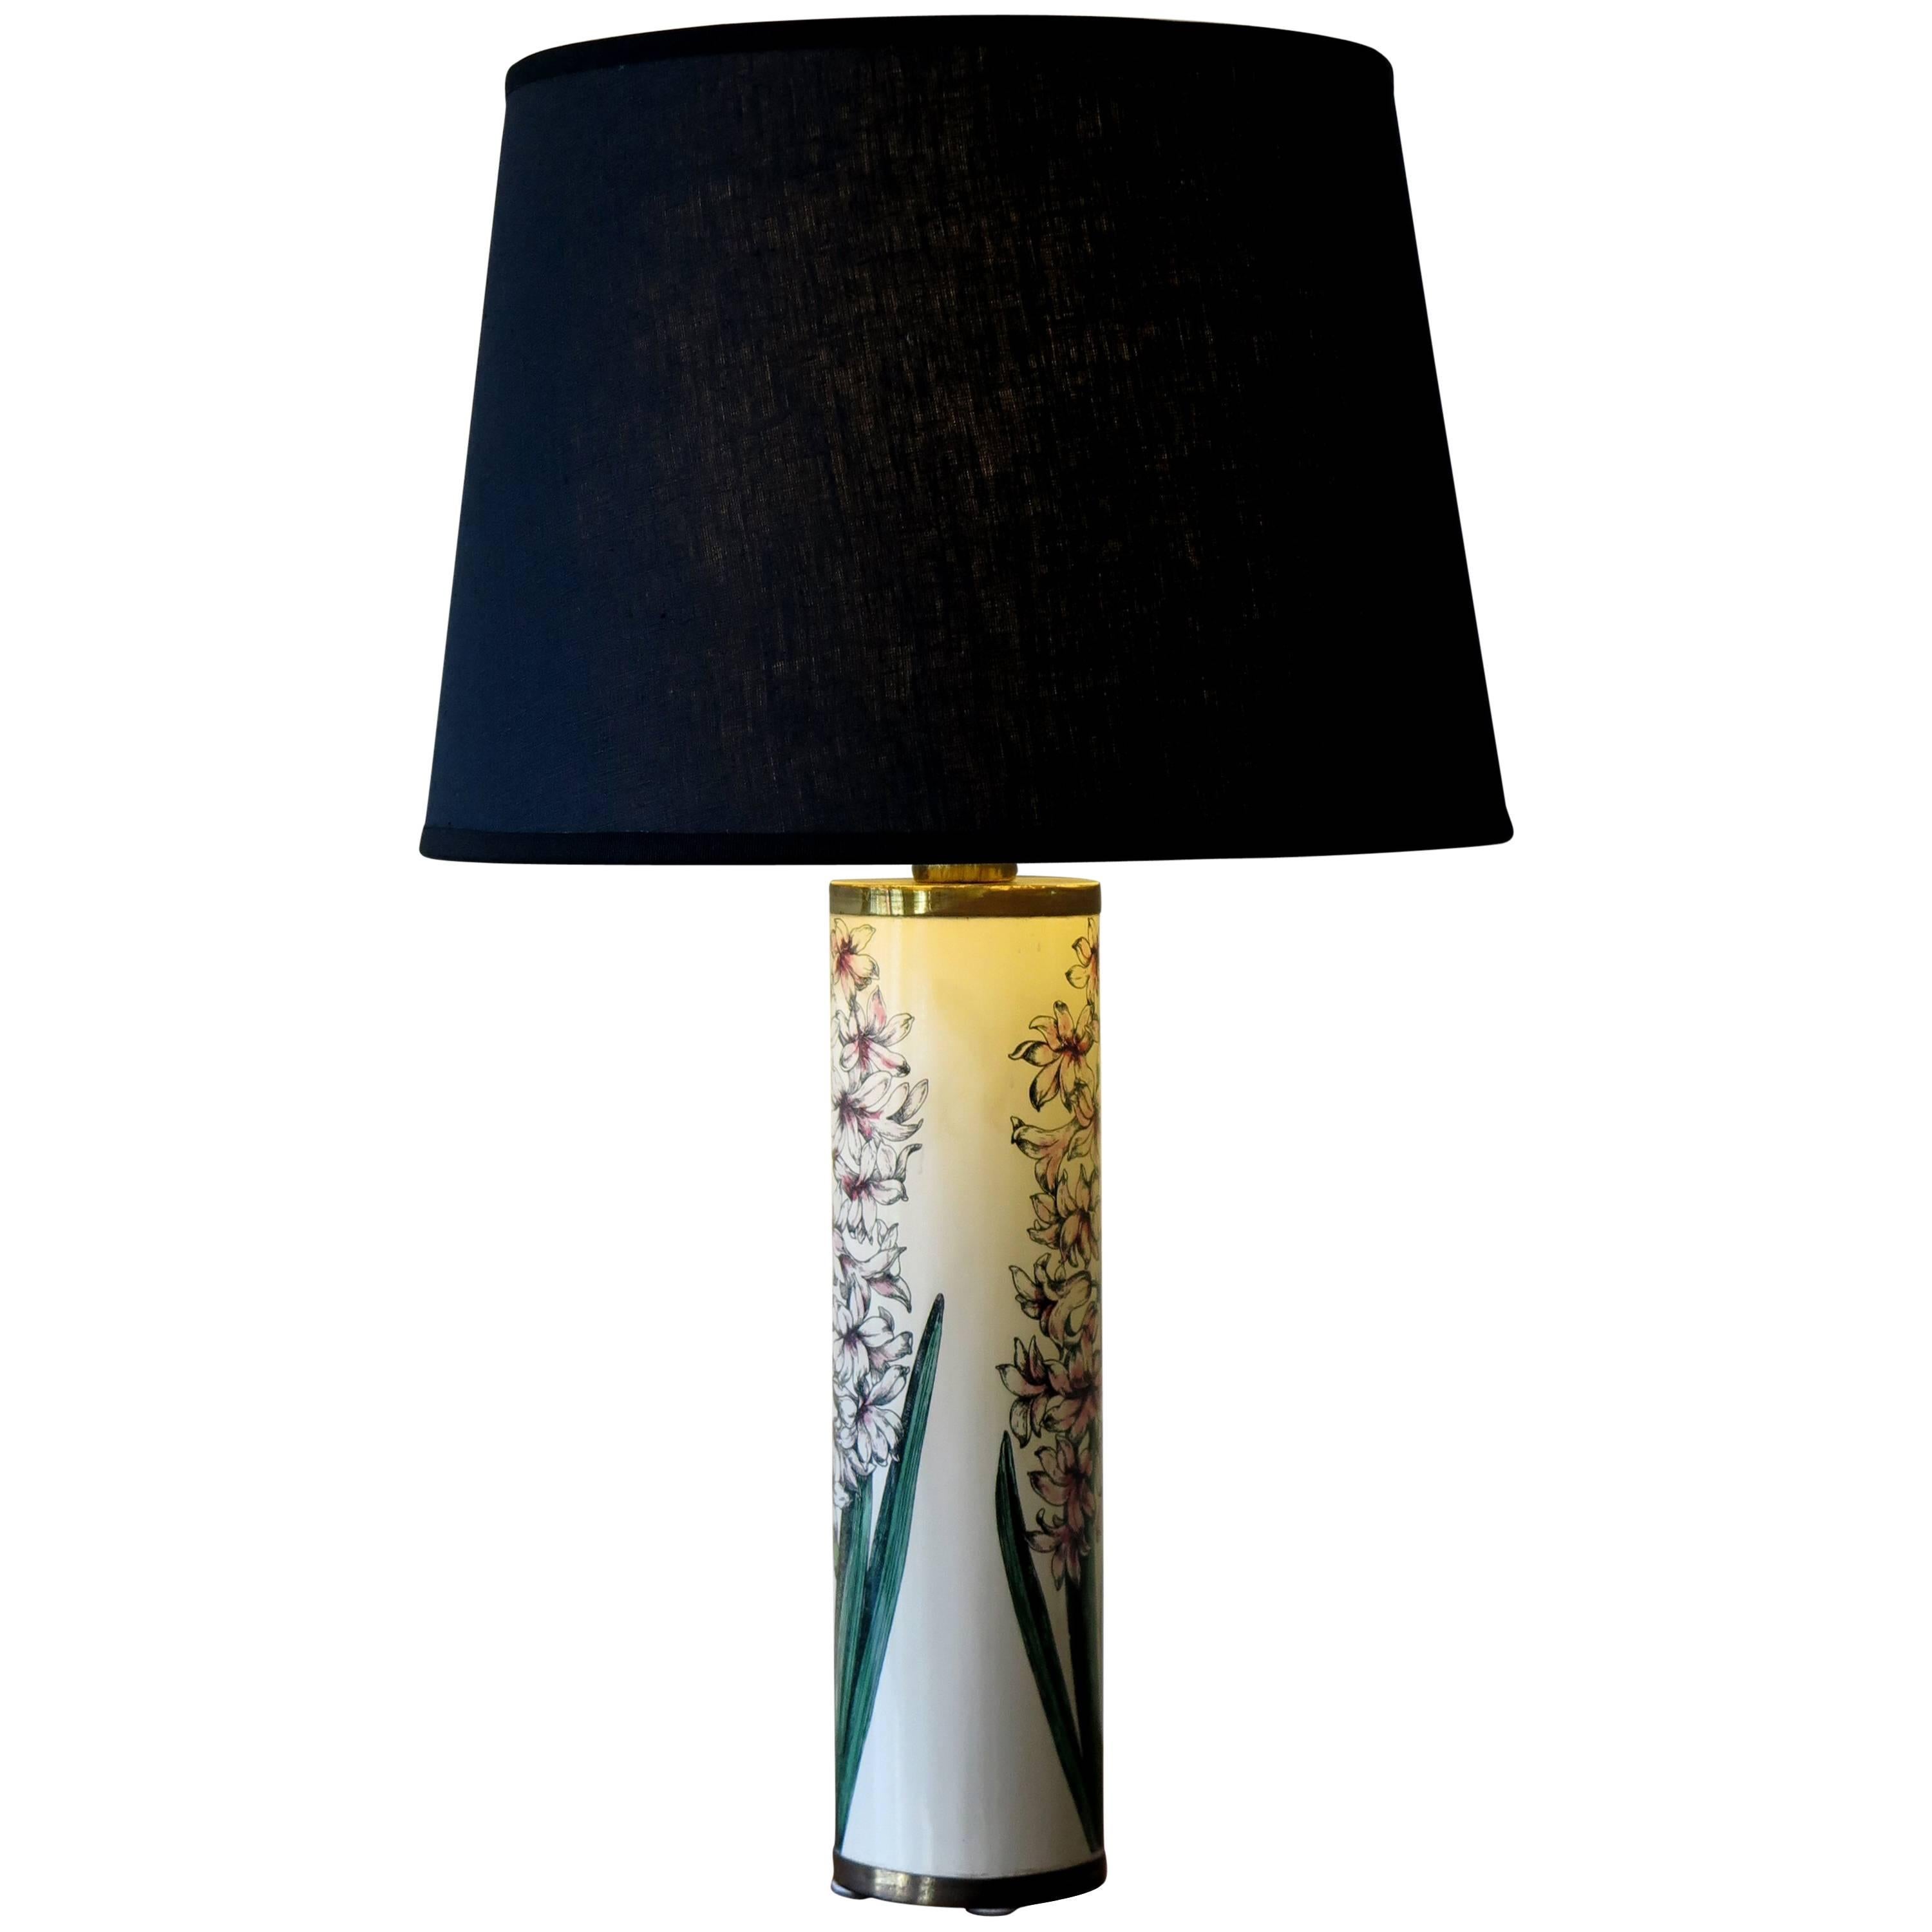 1950s Piero Fornasetti Italian Mid-Century Modern Table Lamp “Hyacinths”